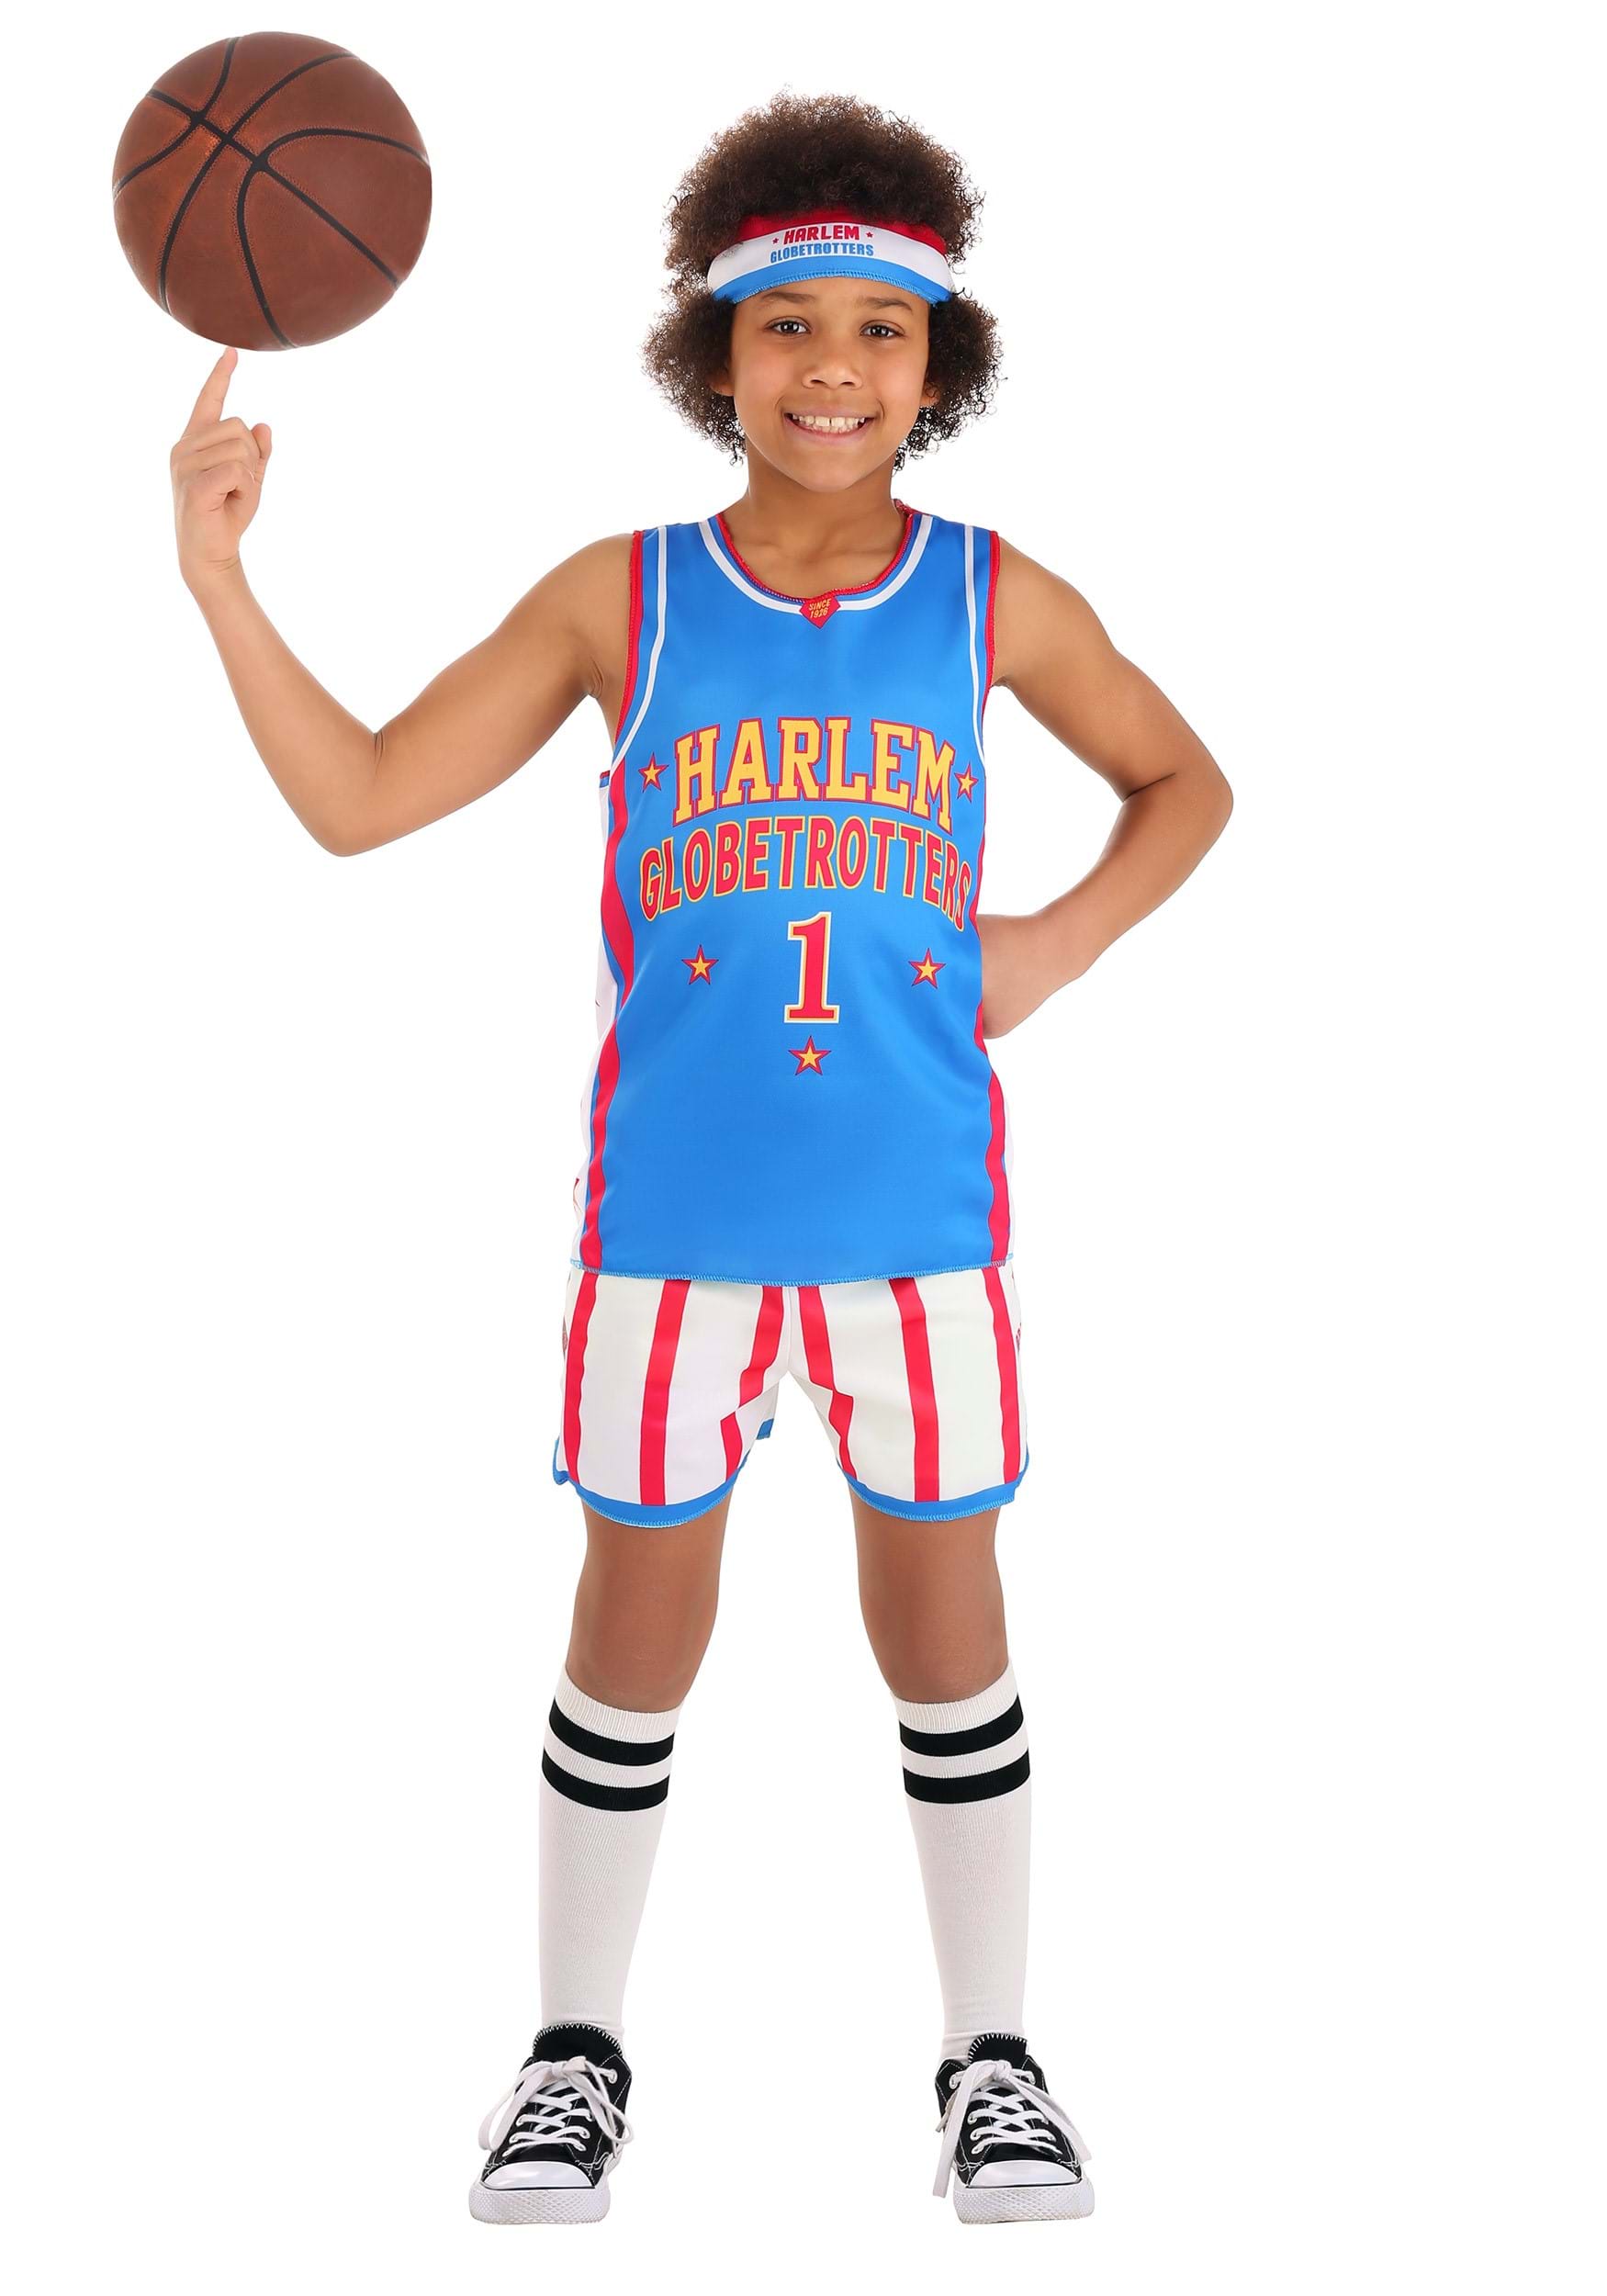 Harlem Globetrotters Uniform Costume for Kids